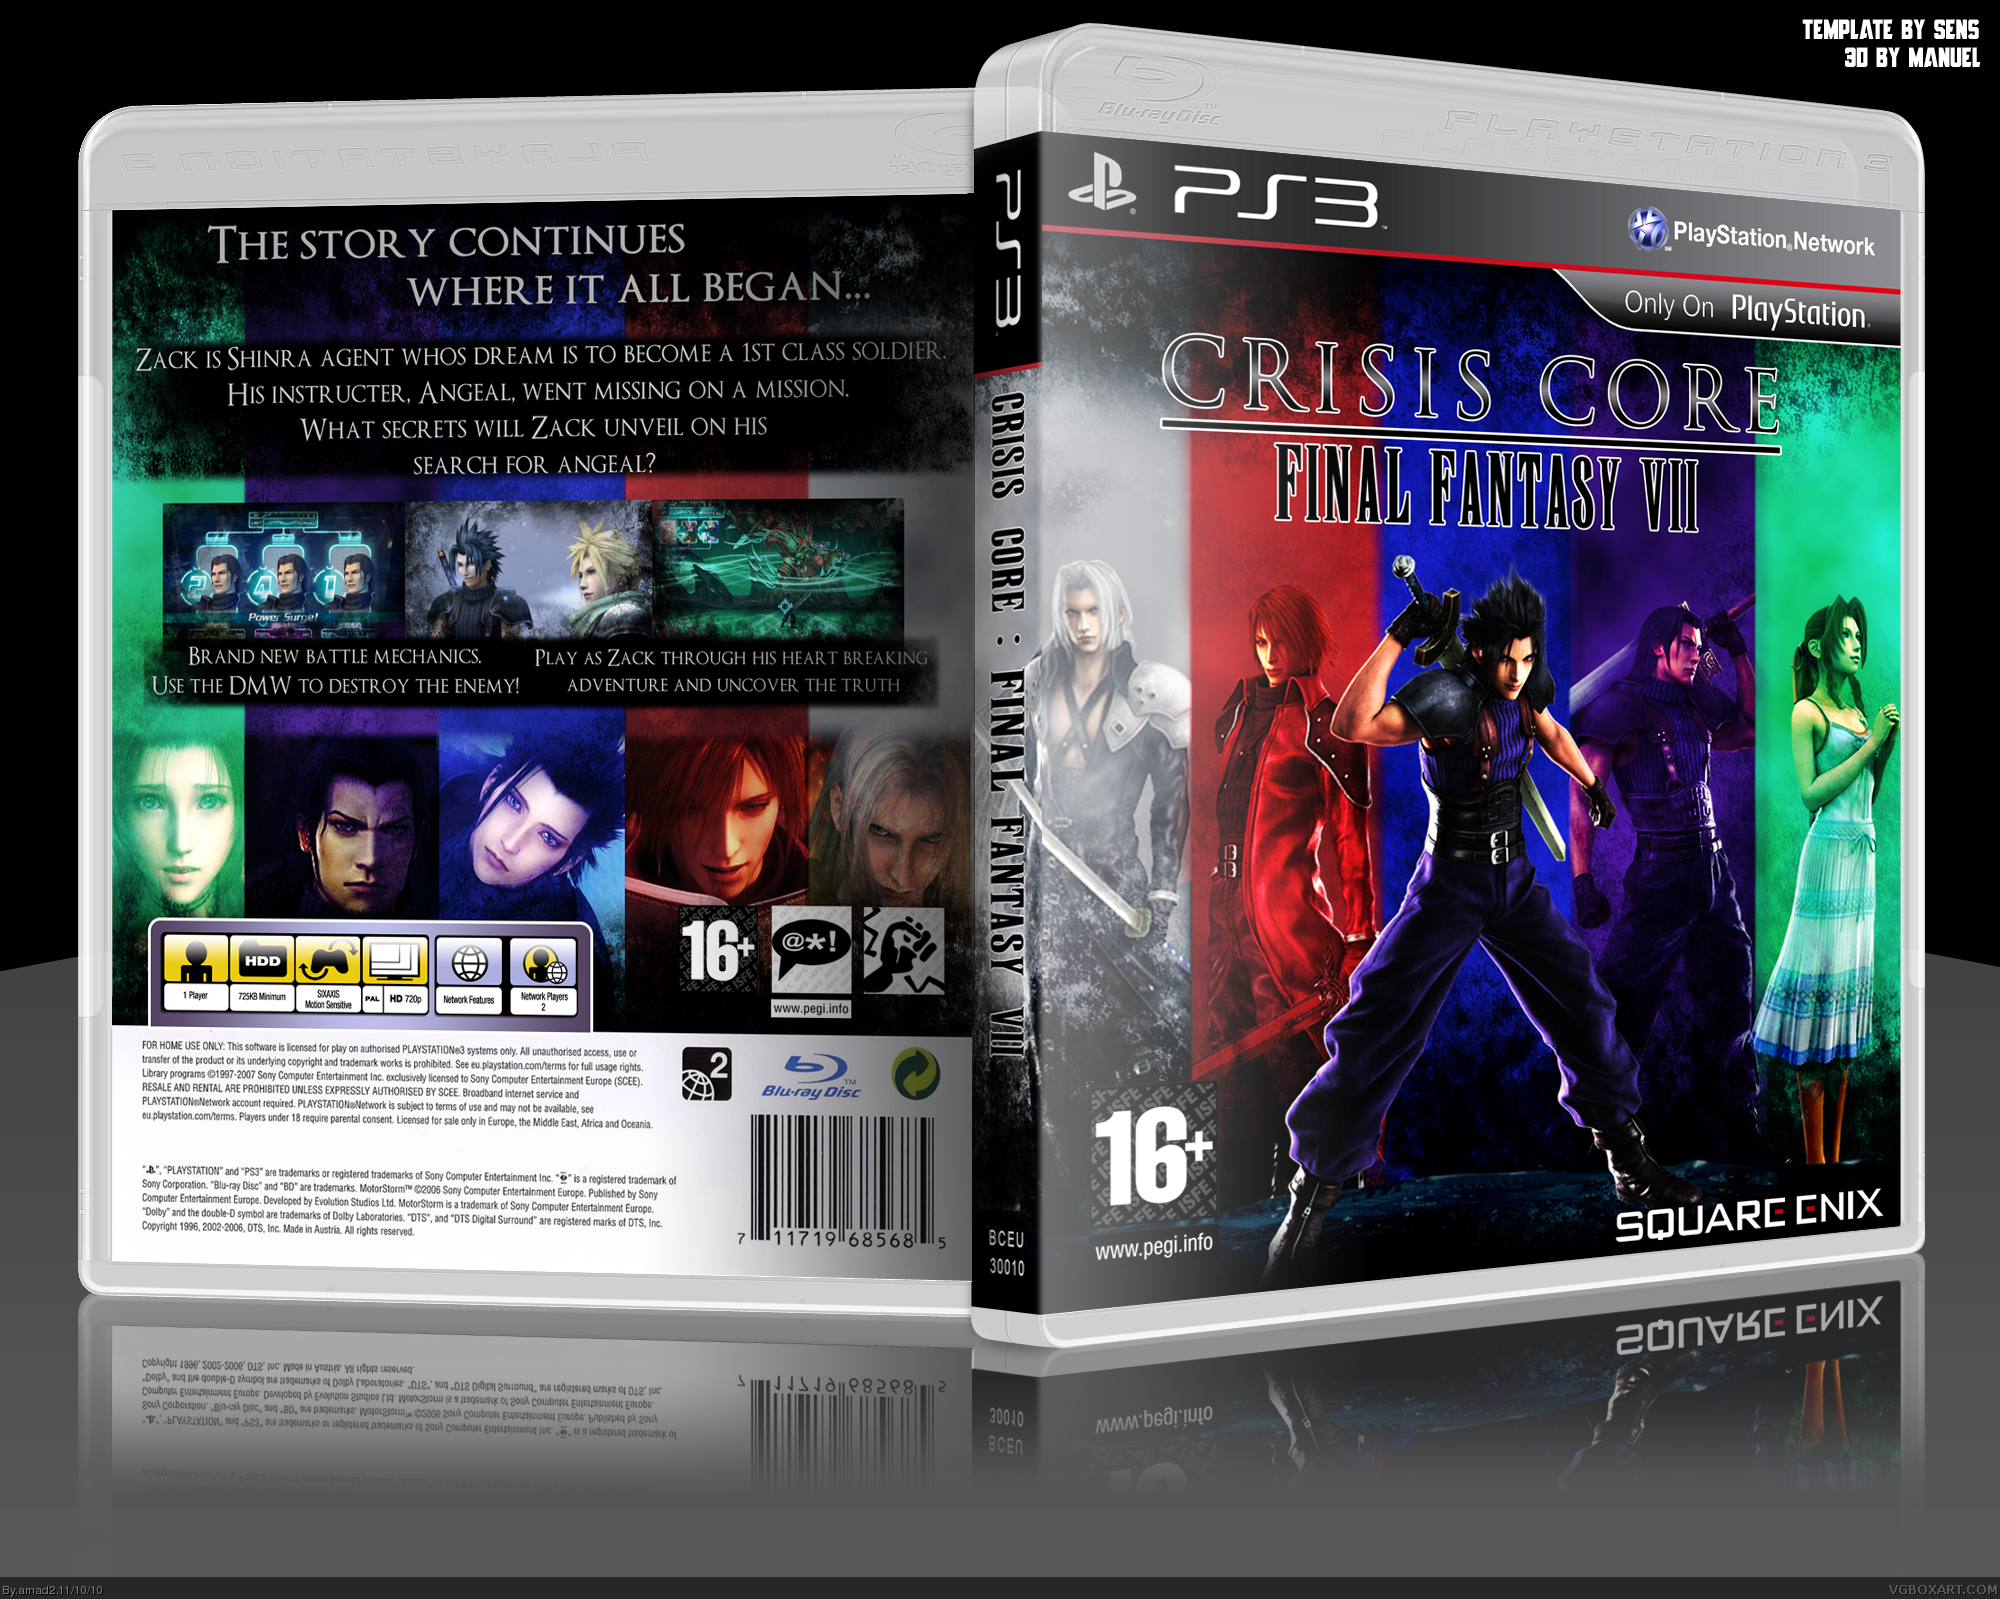 Final Fantasy VII : Crisis Core box cover